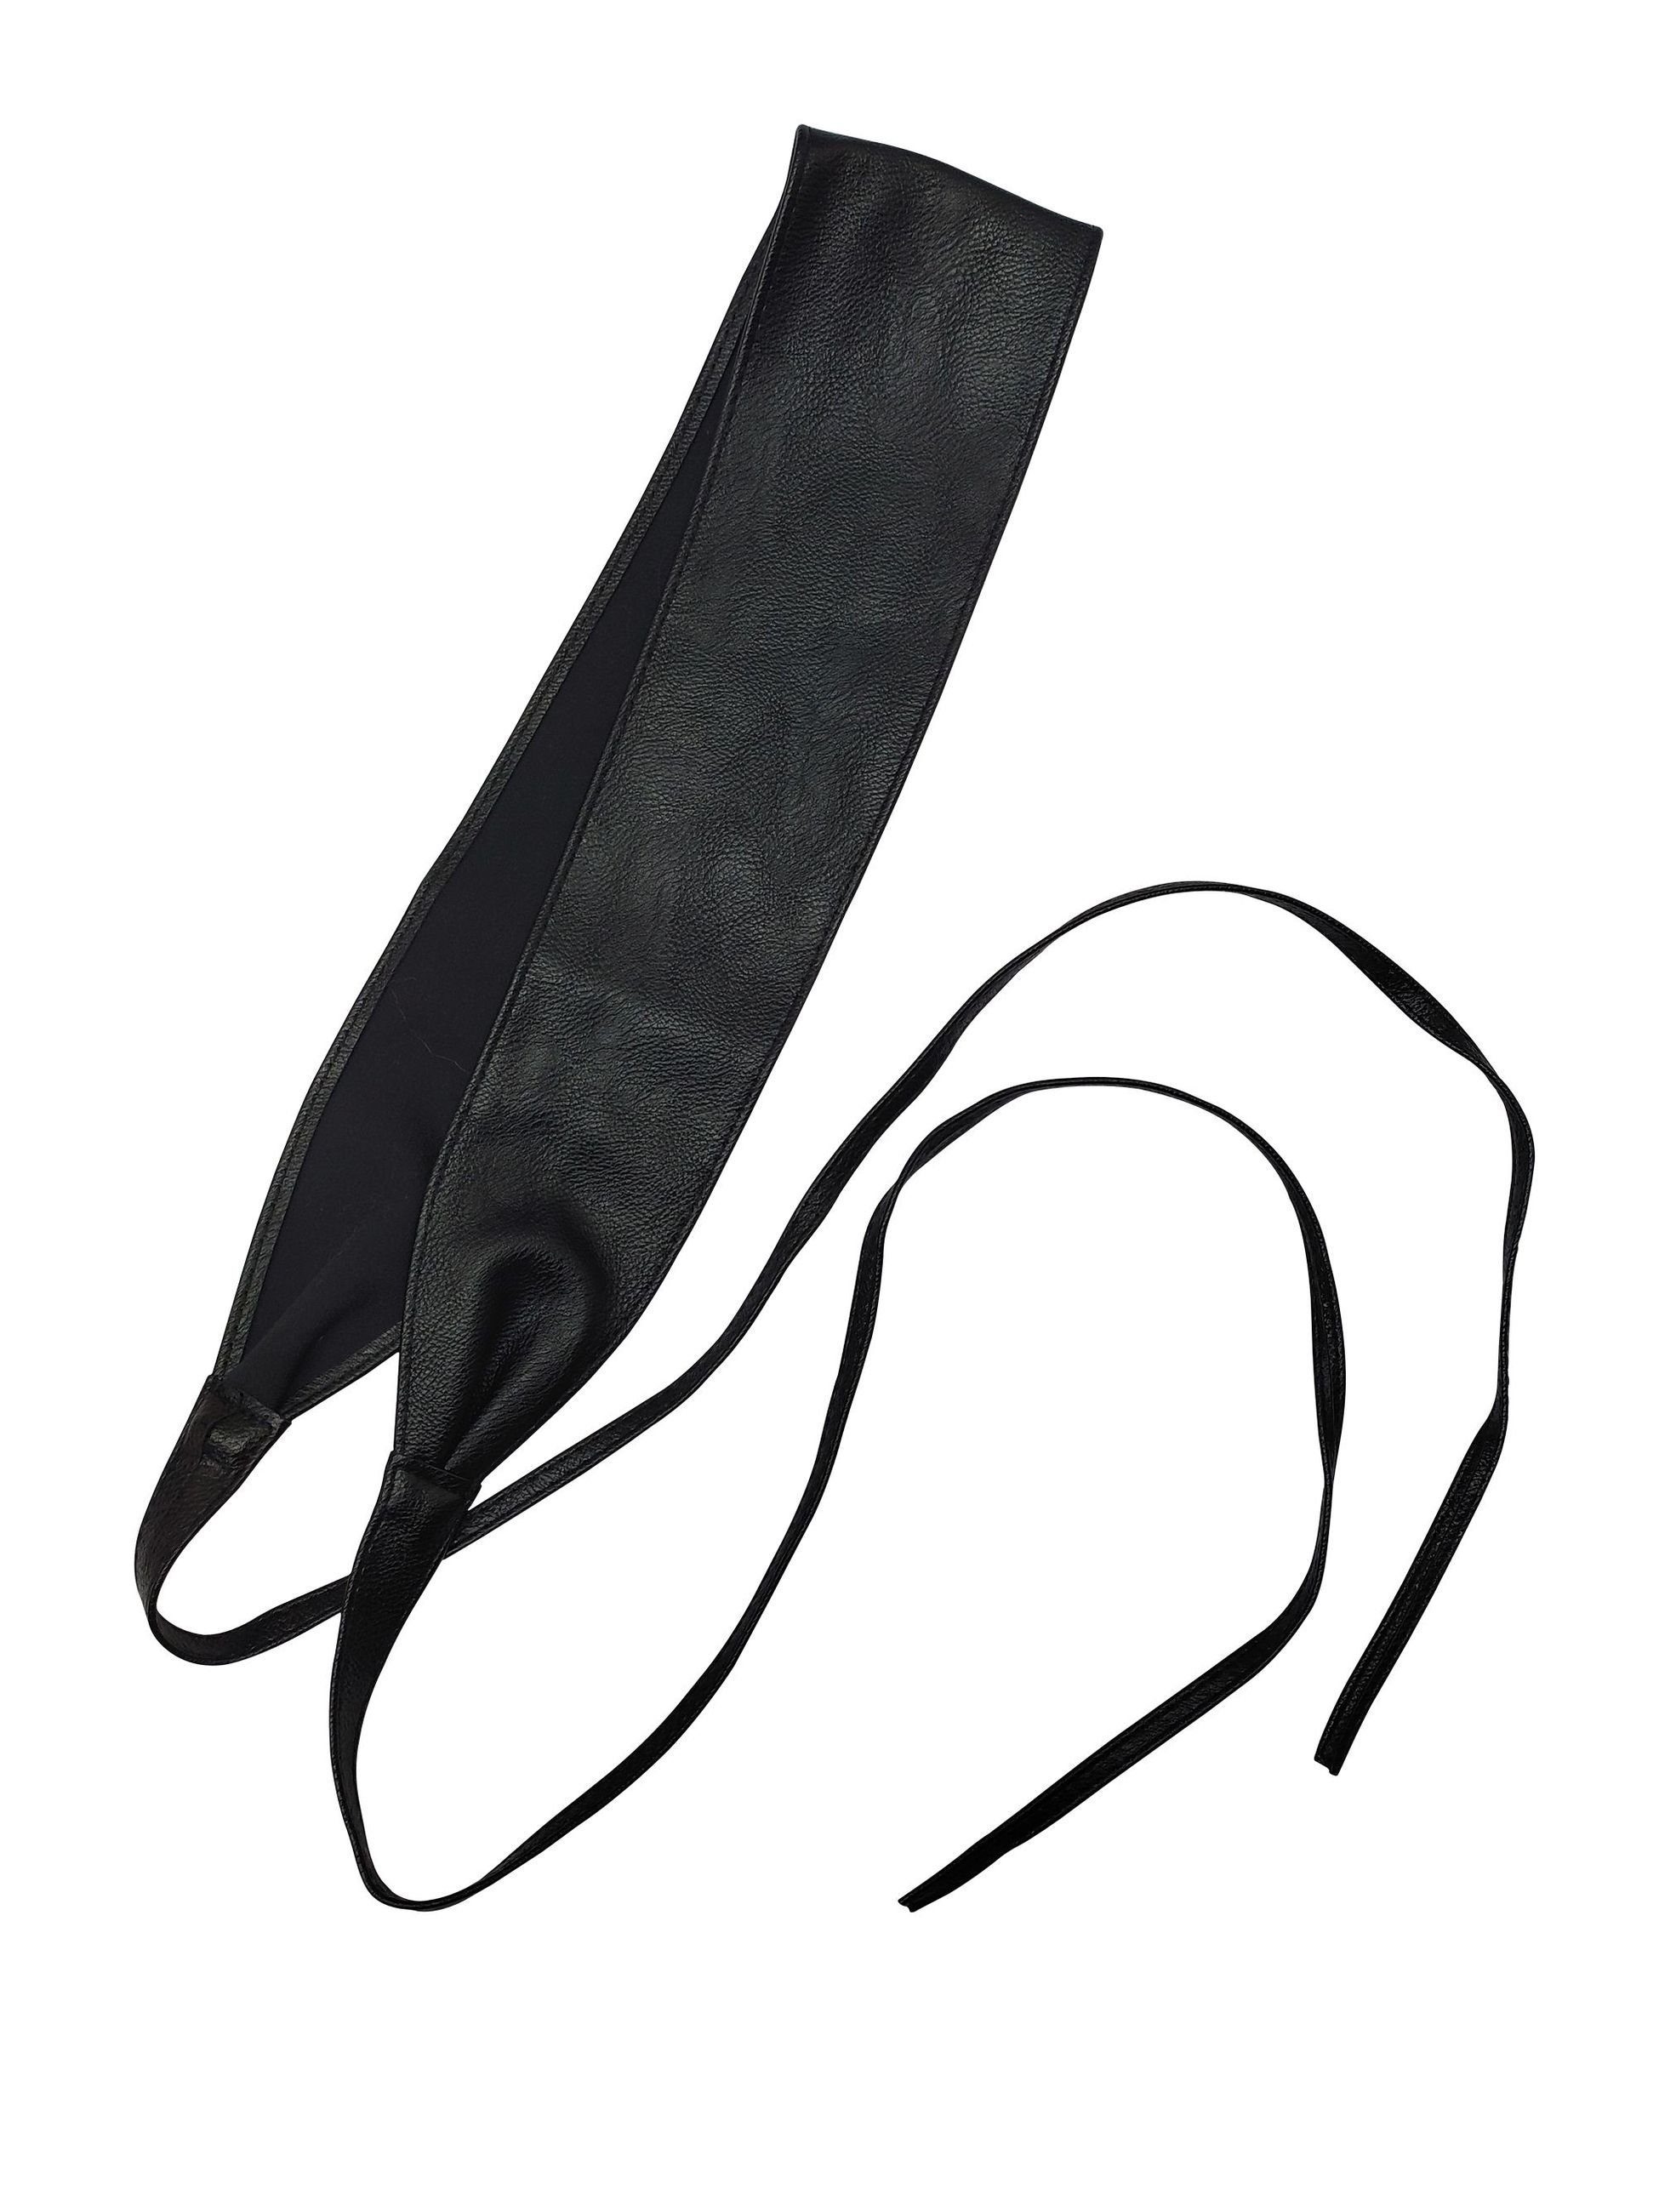 FRONHOFER 18600 Schwarz weich Taillengürtel Binden, Taillengürtel zum Obi, Wickelgürtel breiter sehr